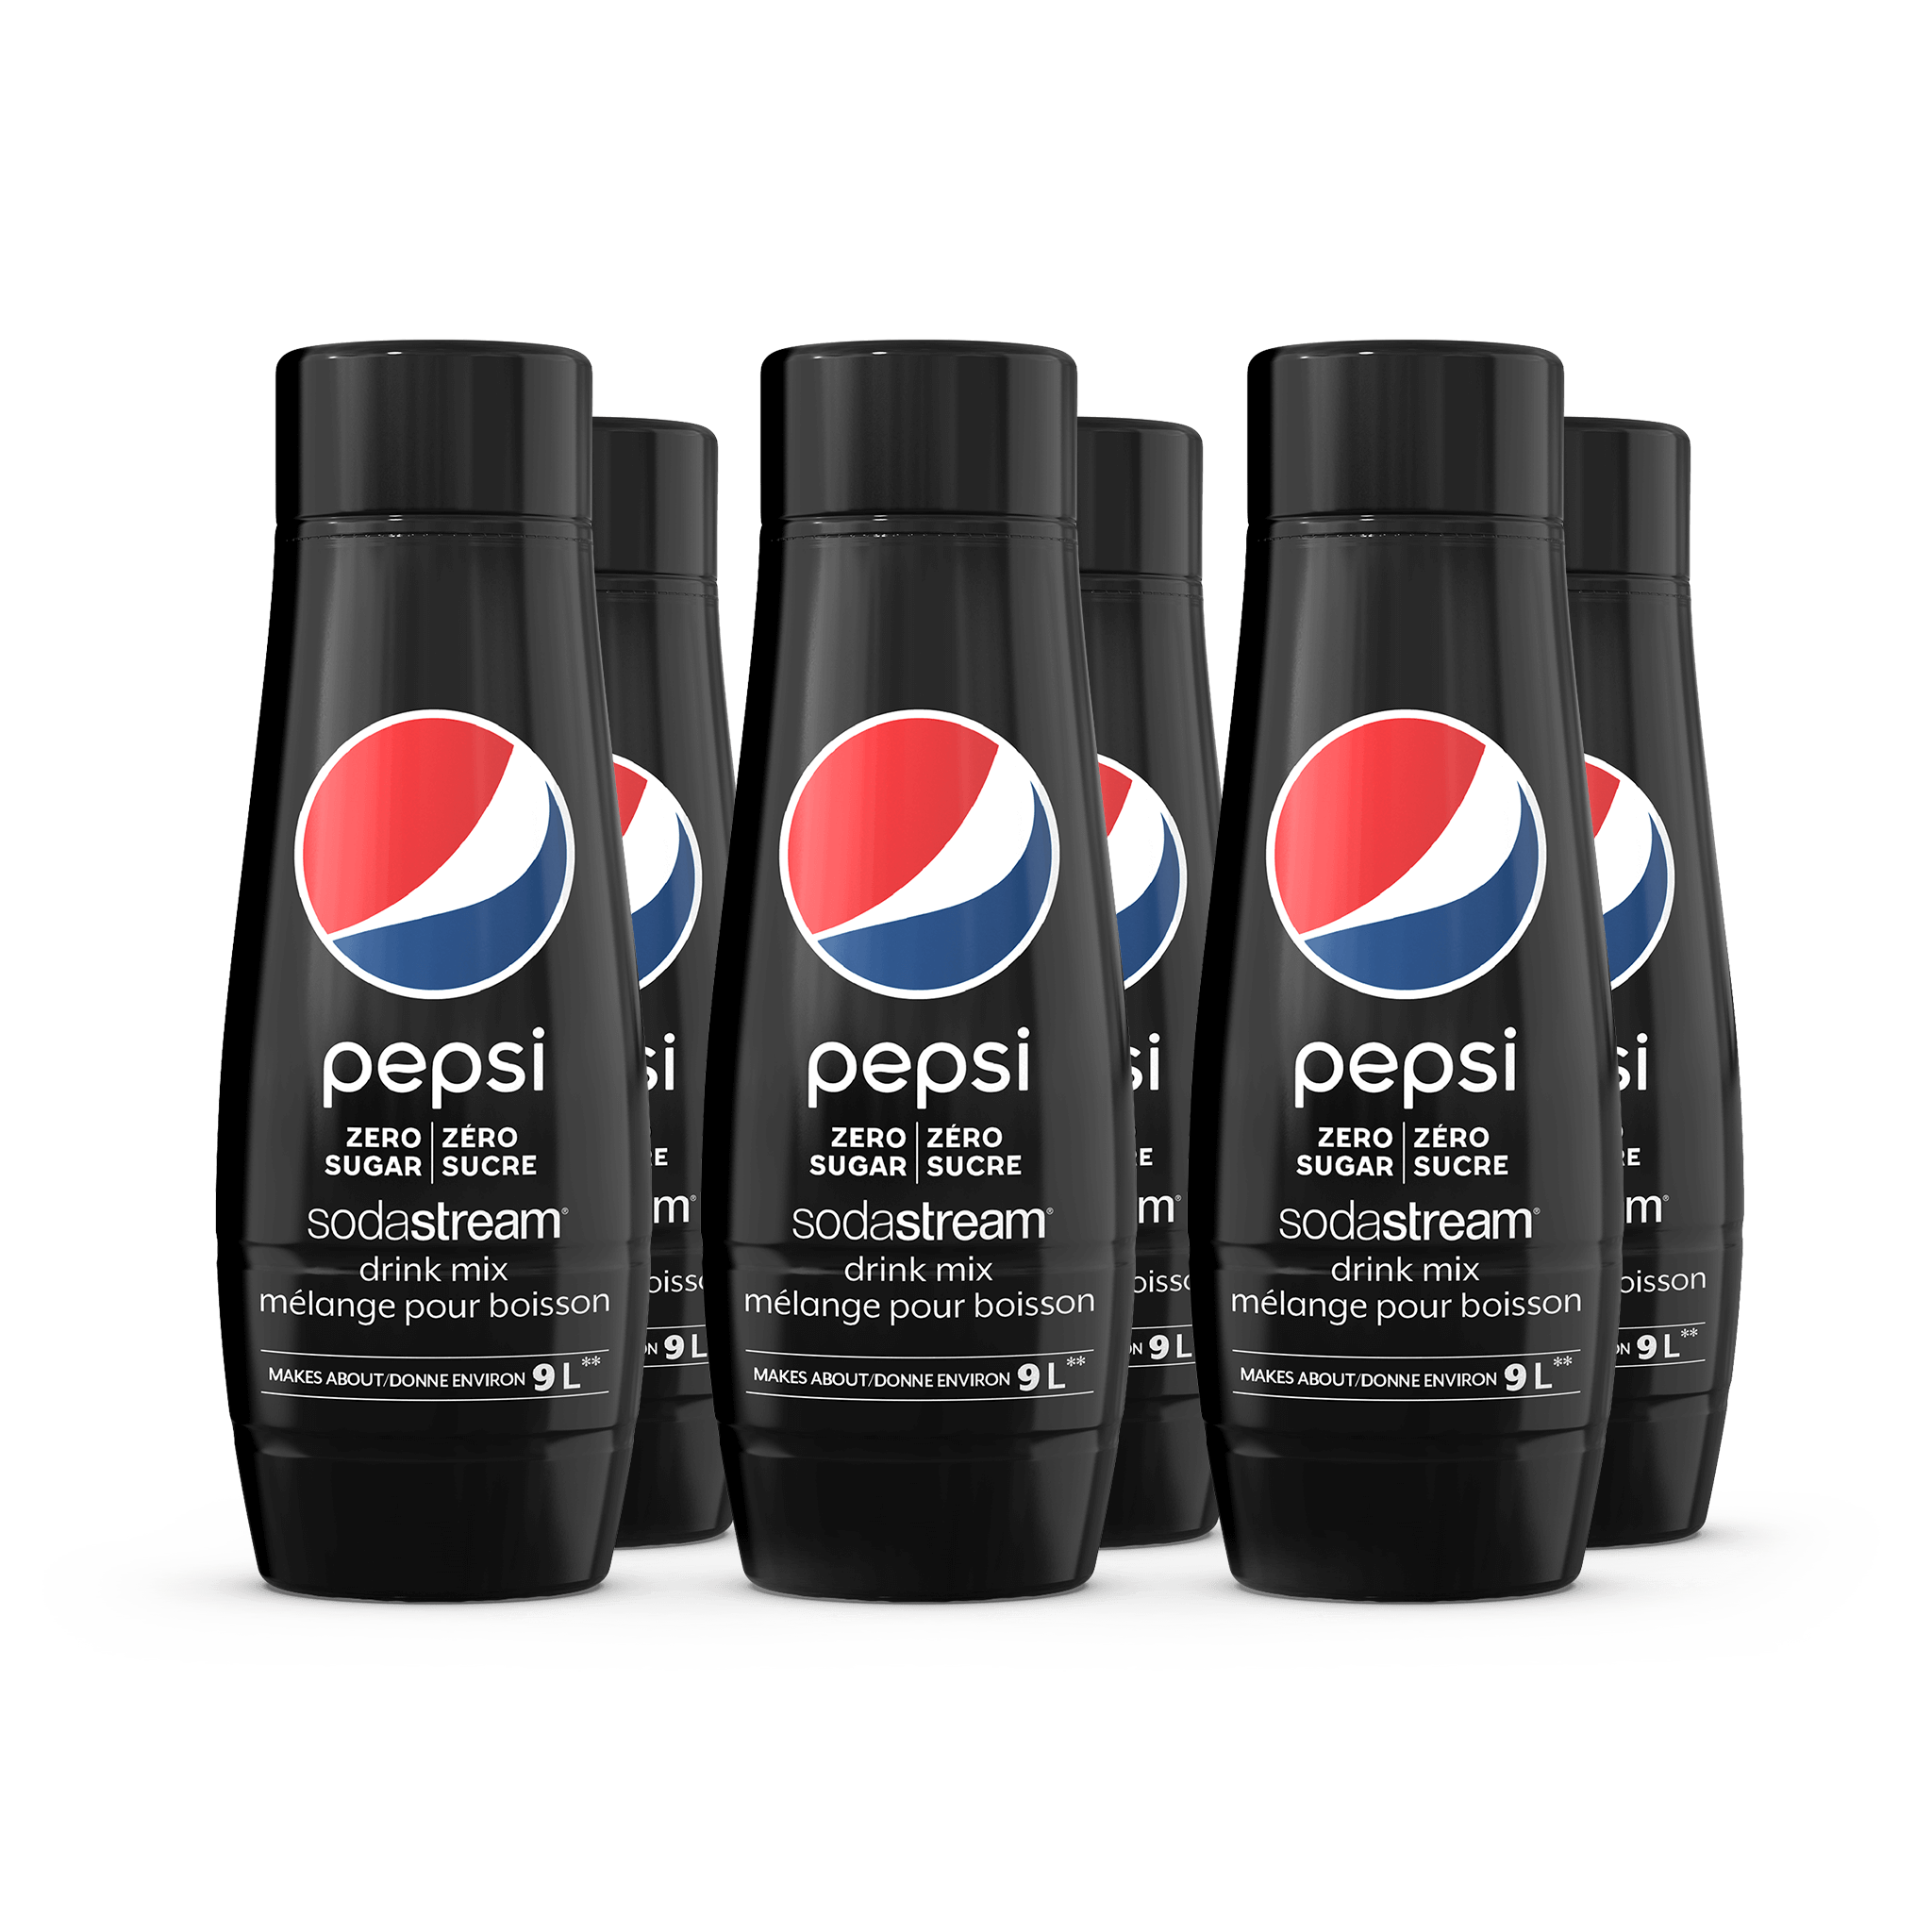 Pepsi Zero Sugar 6-Pack sodastream